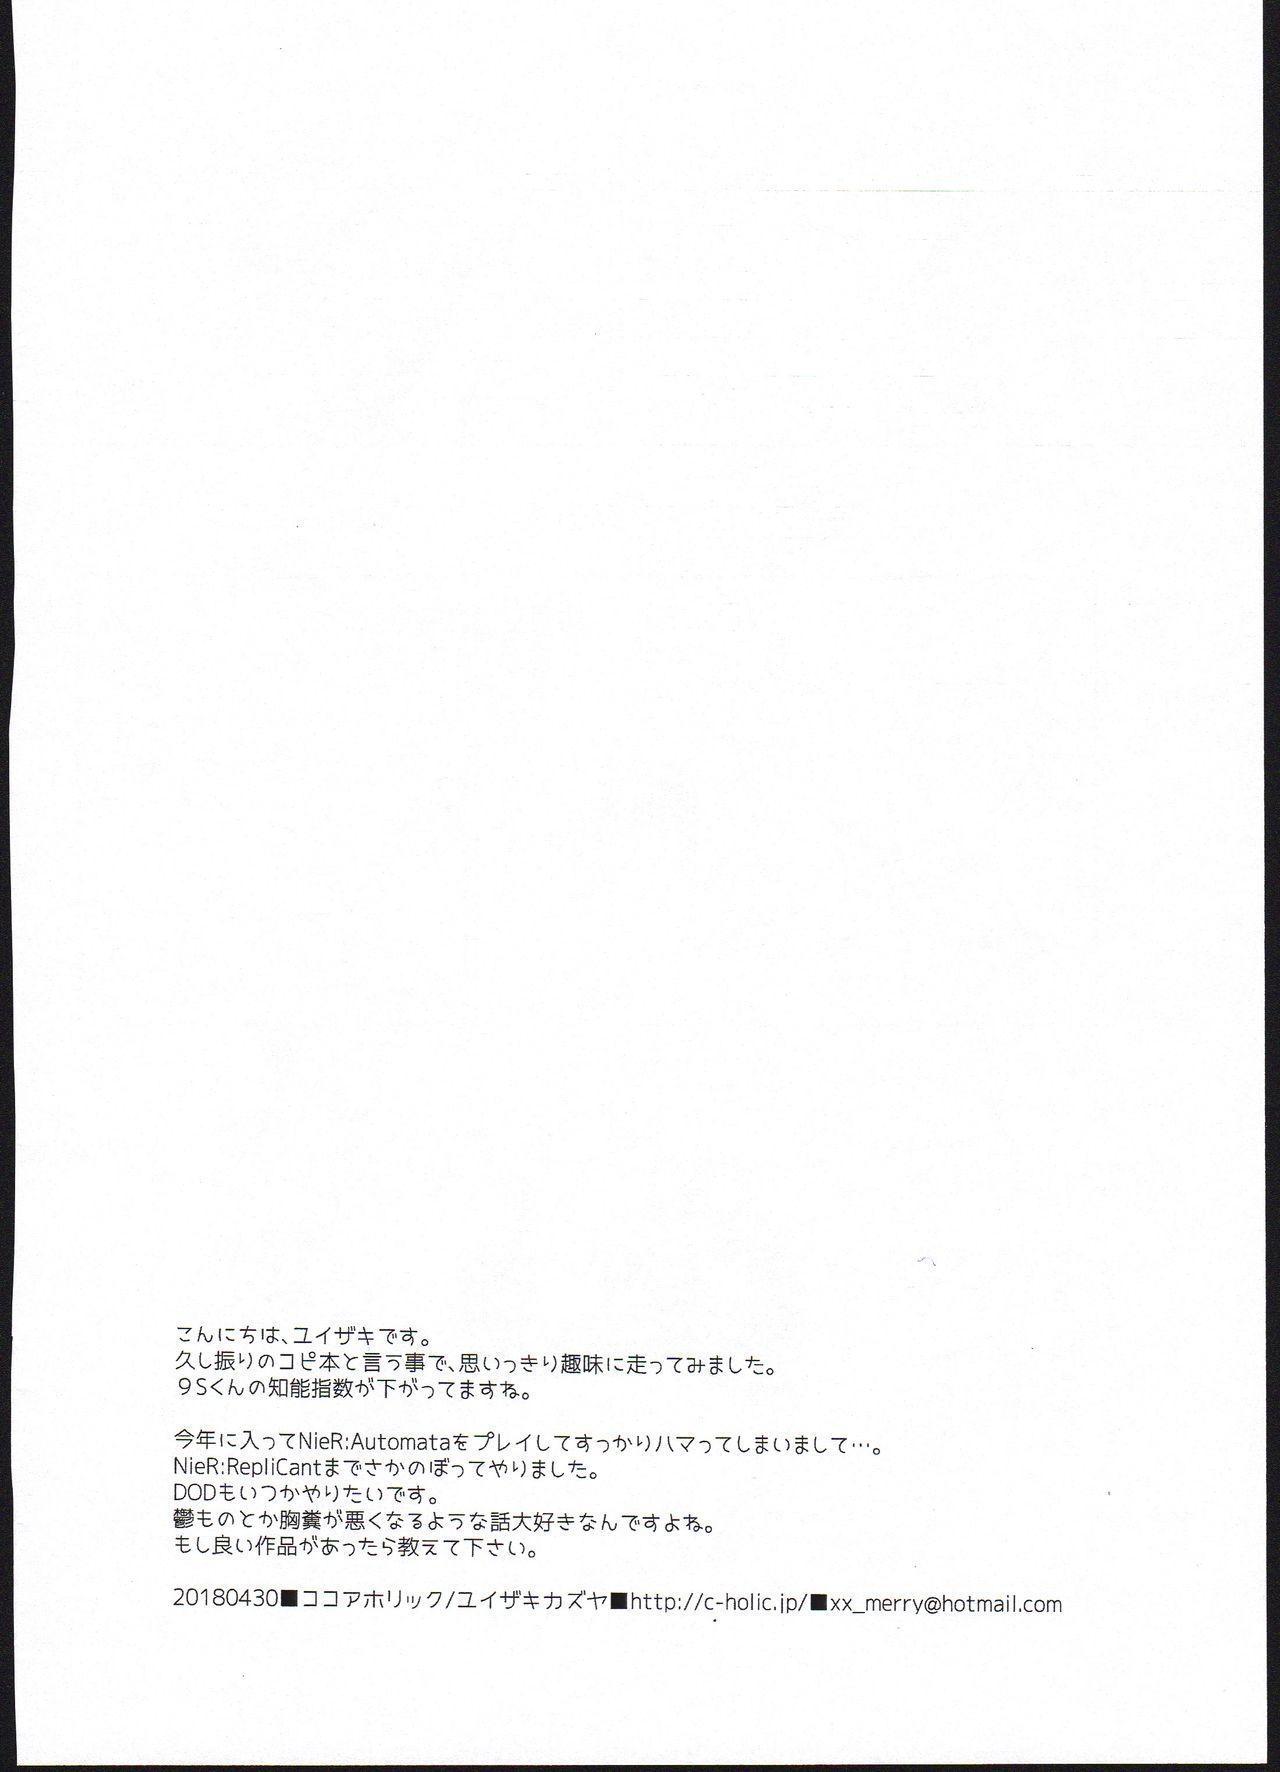 Lesbians YoRHa Kitai 2B no Shoushizaika Gitai Unyou Shiken ni Kansuru Houkoku - Nier automata Tanned - Page 13